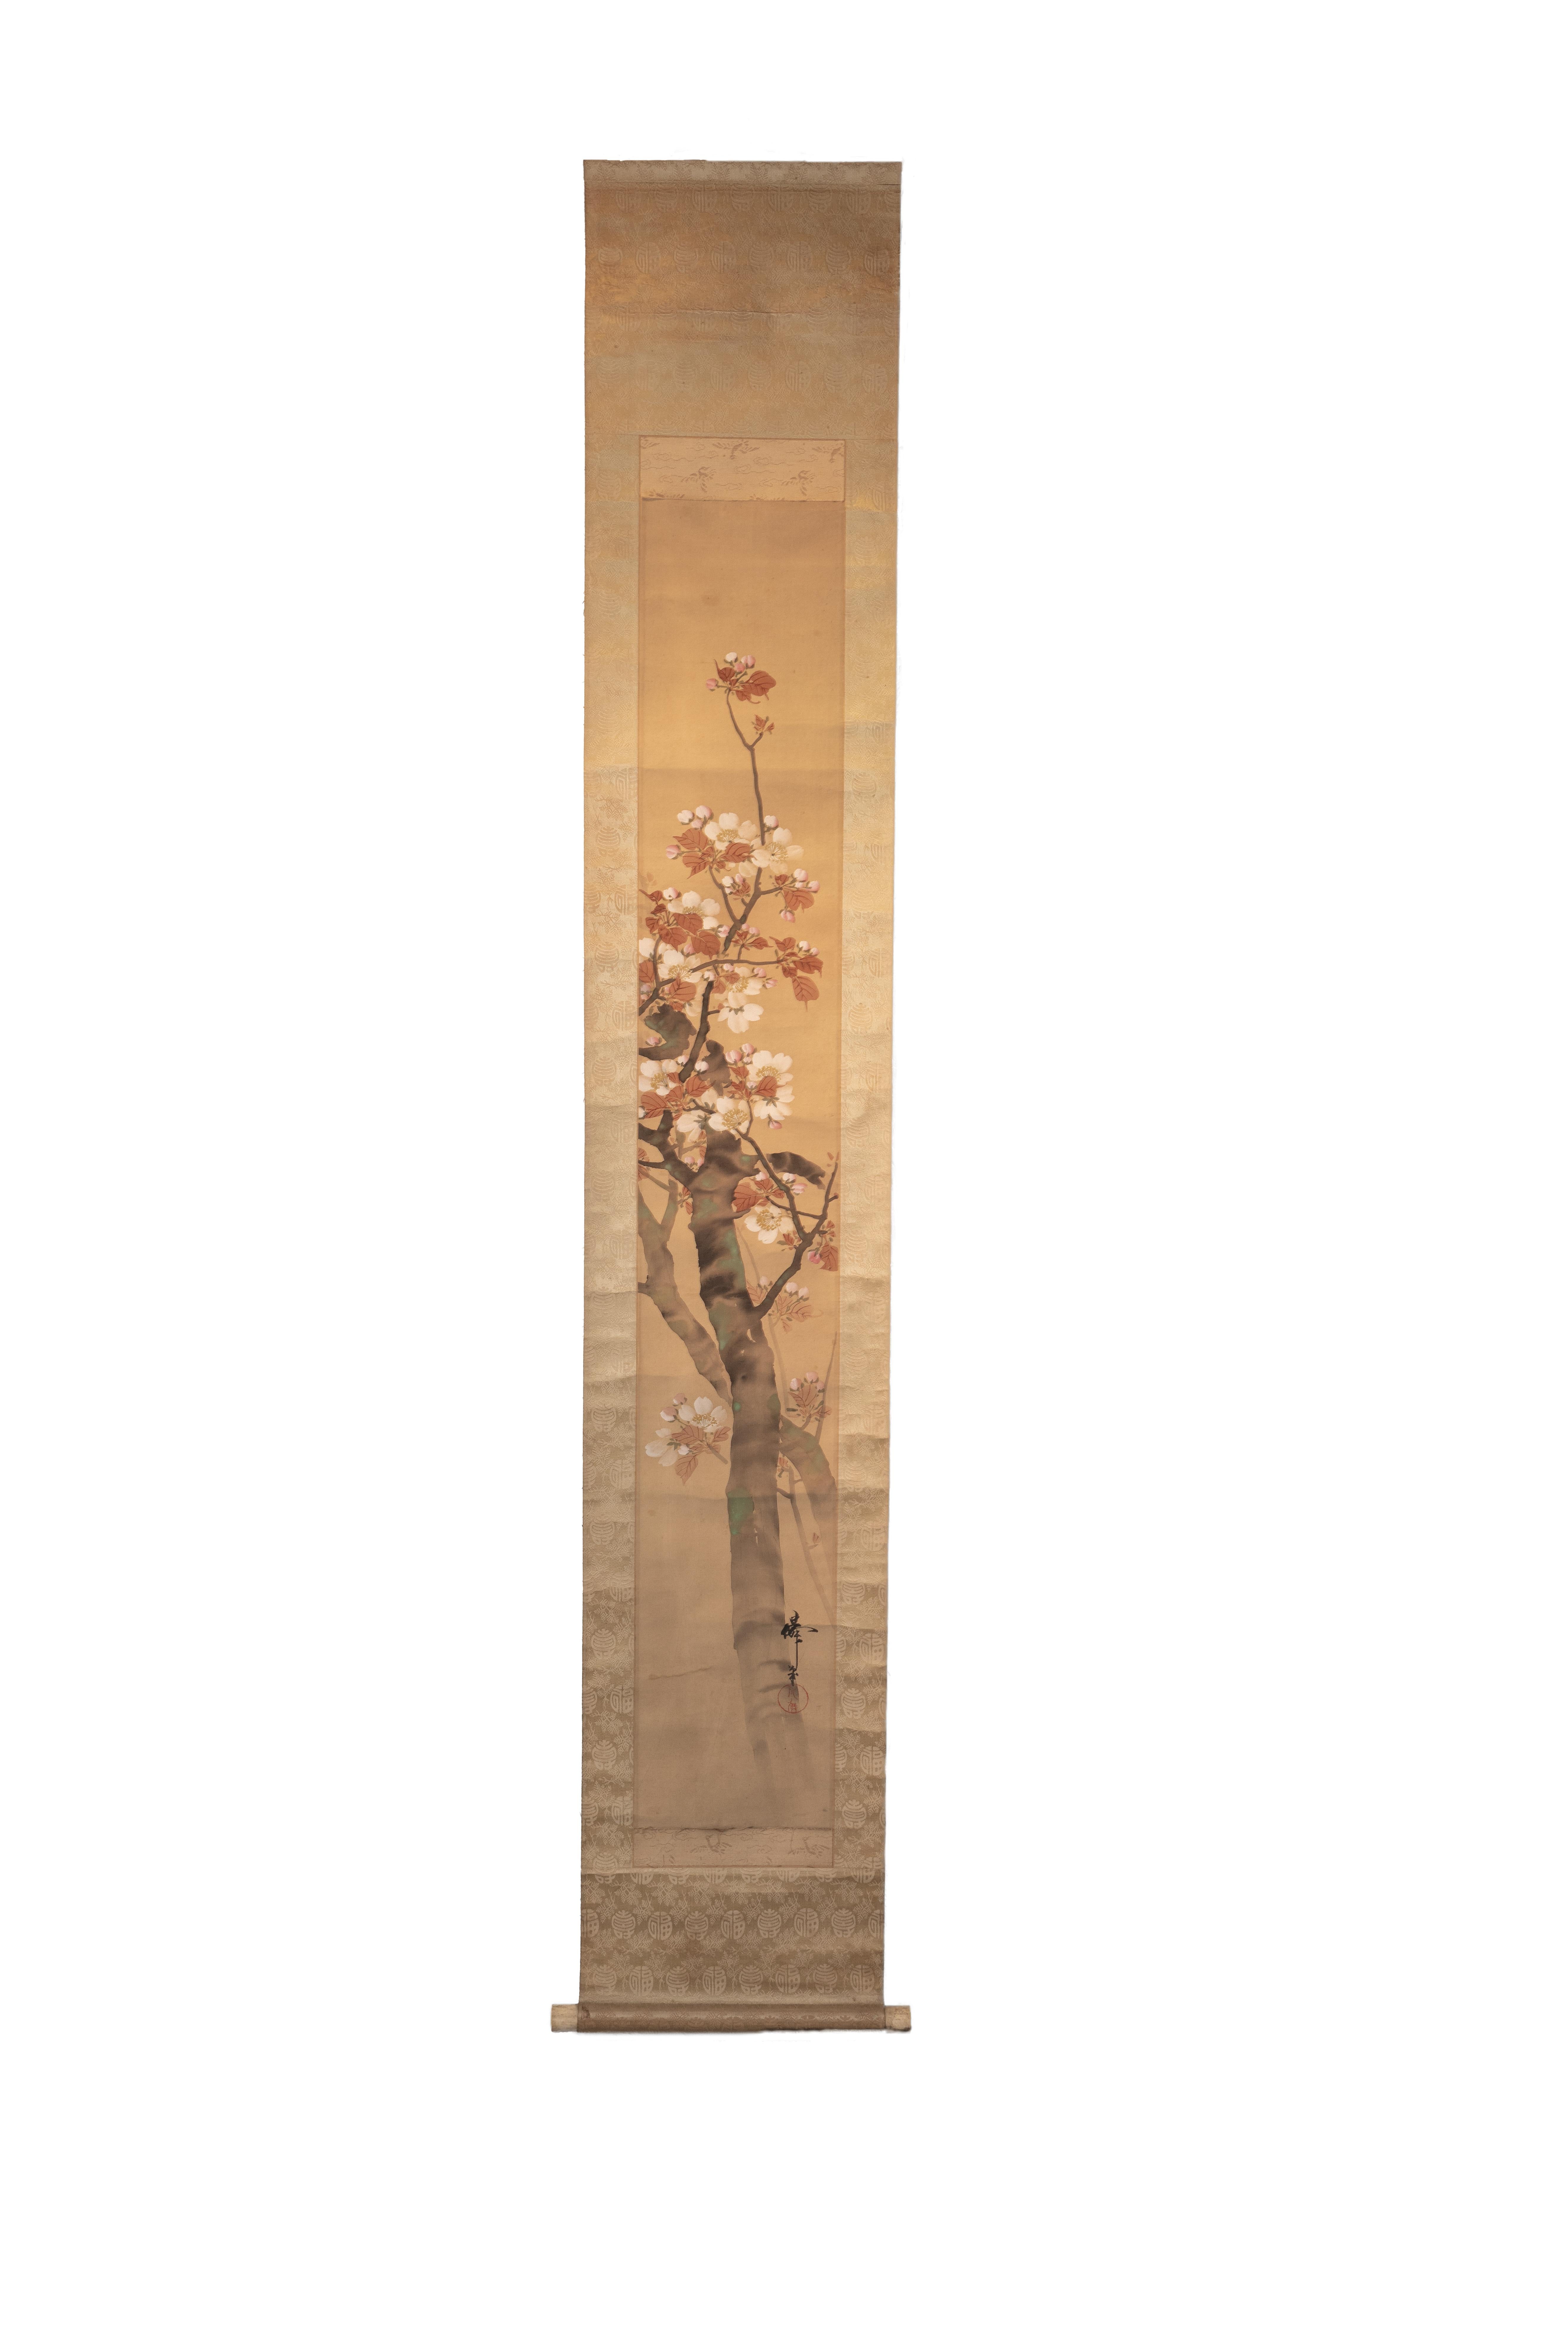 Ce rouleau japonais ancien représente un cornouiller. Peint à l'aquarelle dans un style japonais traditionnel, les coups de pinceau sont quelque peu opaques et appliqués librement. Le tronc du cornouiller émerge du coin inférieur droit, peint de